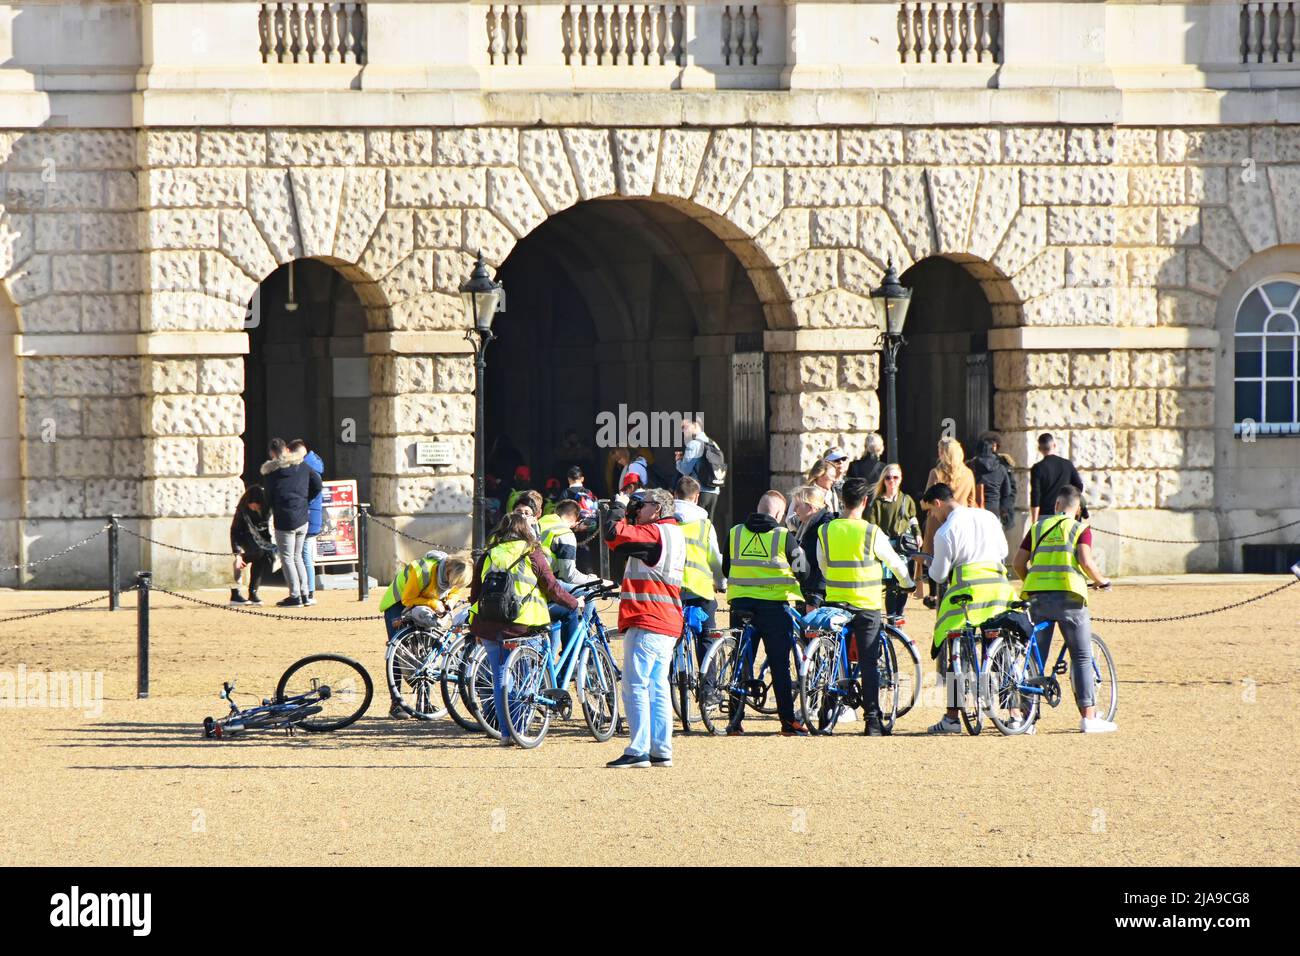 Eine Gruppe von Touristen, die auf einer Fahrradtour mit gut sichtbaren Jacken auf dem historischen Horse Guards Parade Ground für einen Fotostopp in London England, Großbritannien, unterwegs sind Stockfoto